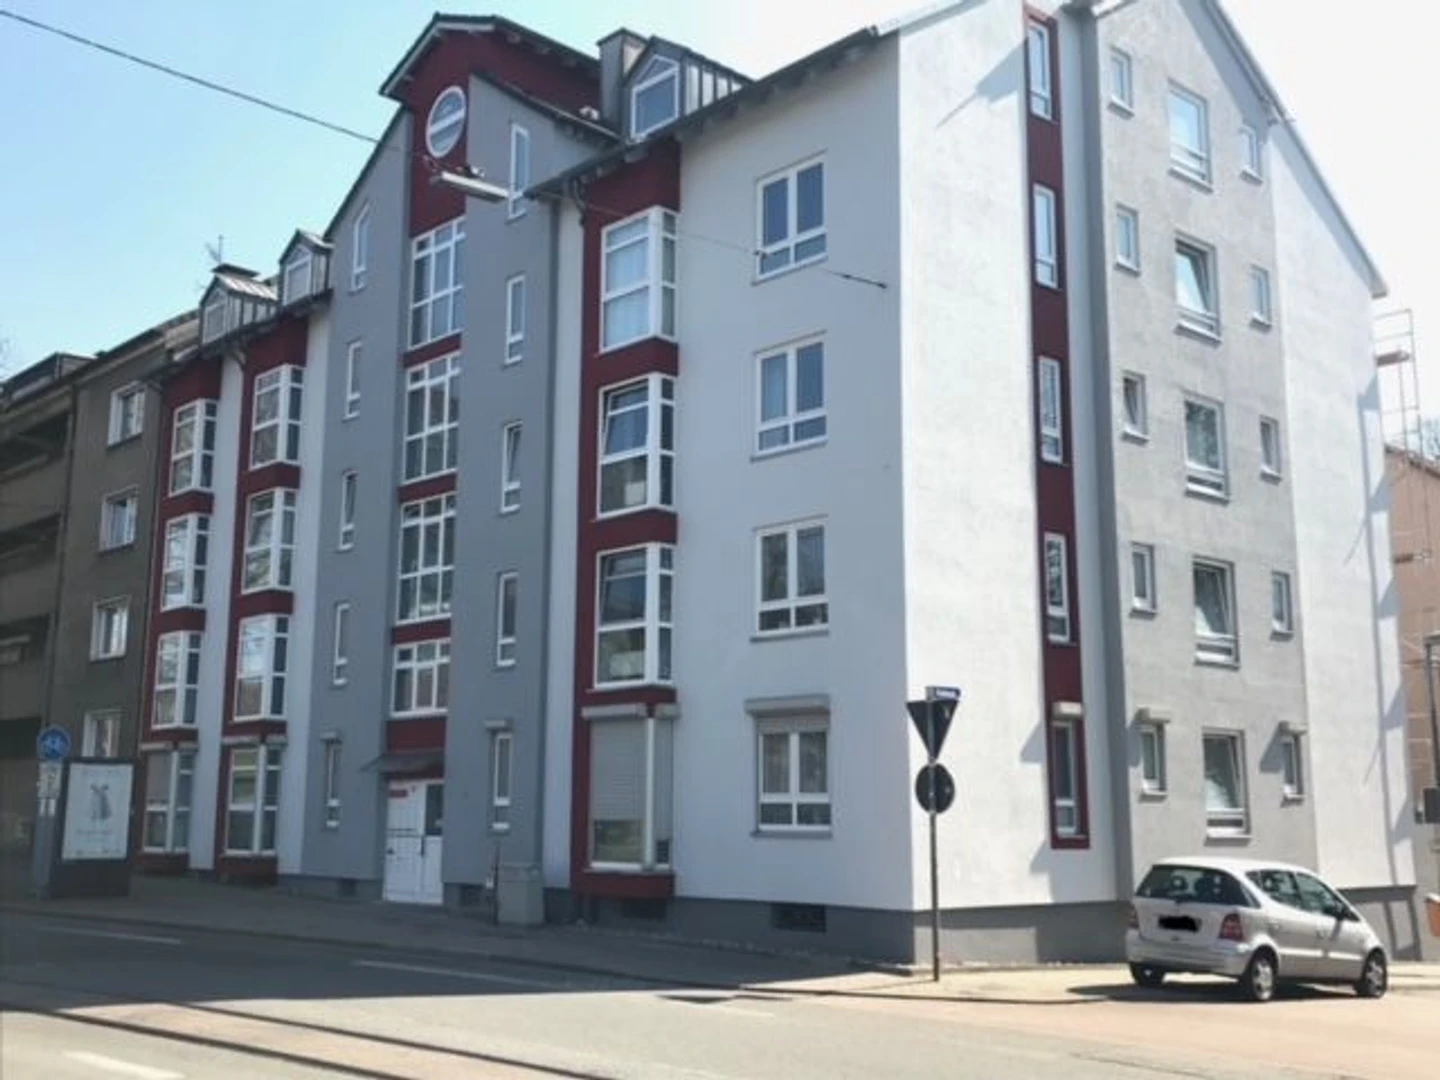 Bochum de çift kişilik yataklı kiralık oda